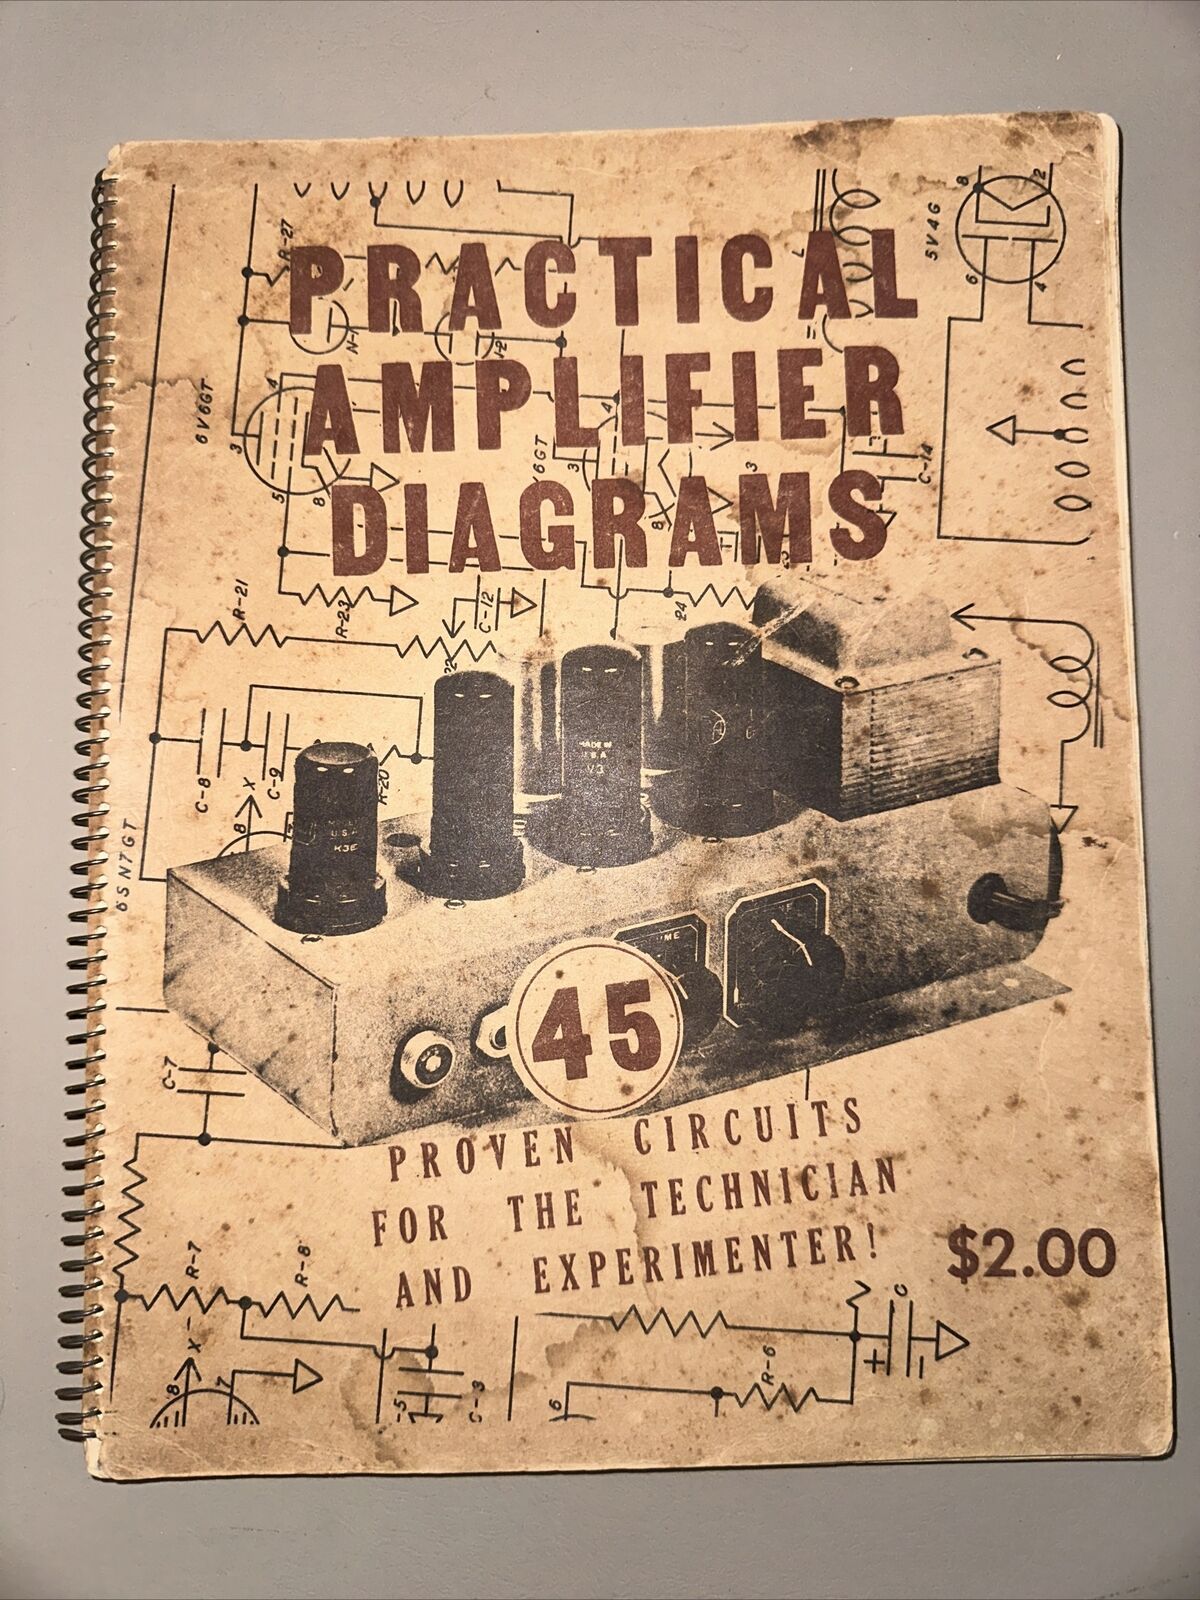 practical amplifier diagrams 45 Proven Circuits 1947 Tube Amplifier Design